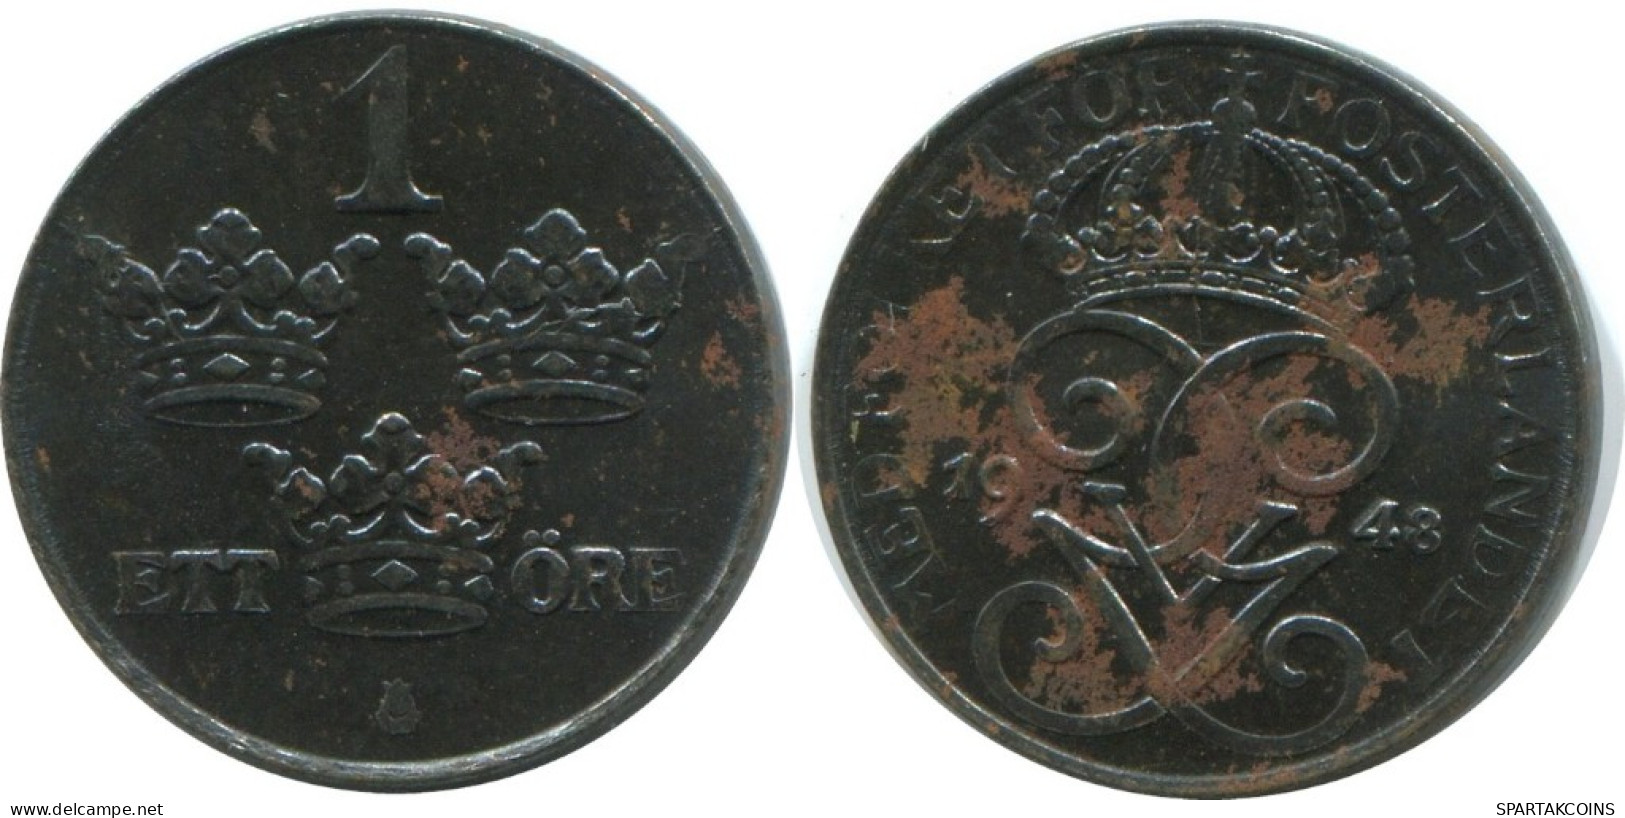 1 ORE 1948 SUECIA SWEDEN Moneda #AD331.2.E.A - Sweden